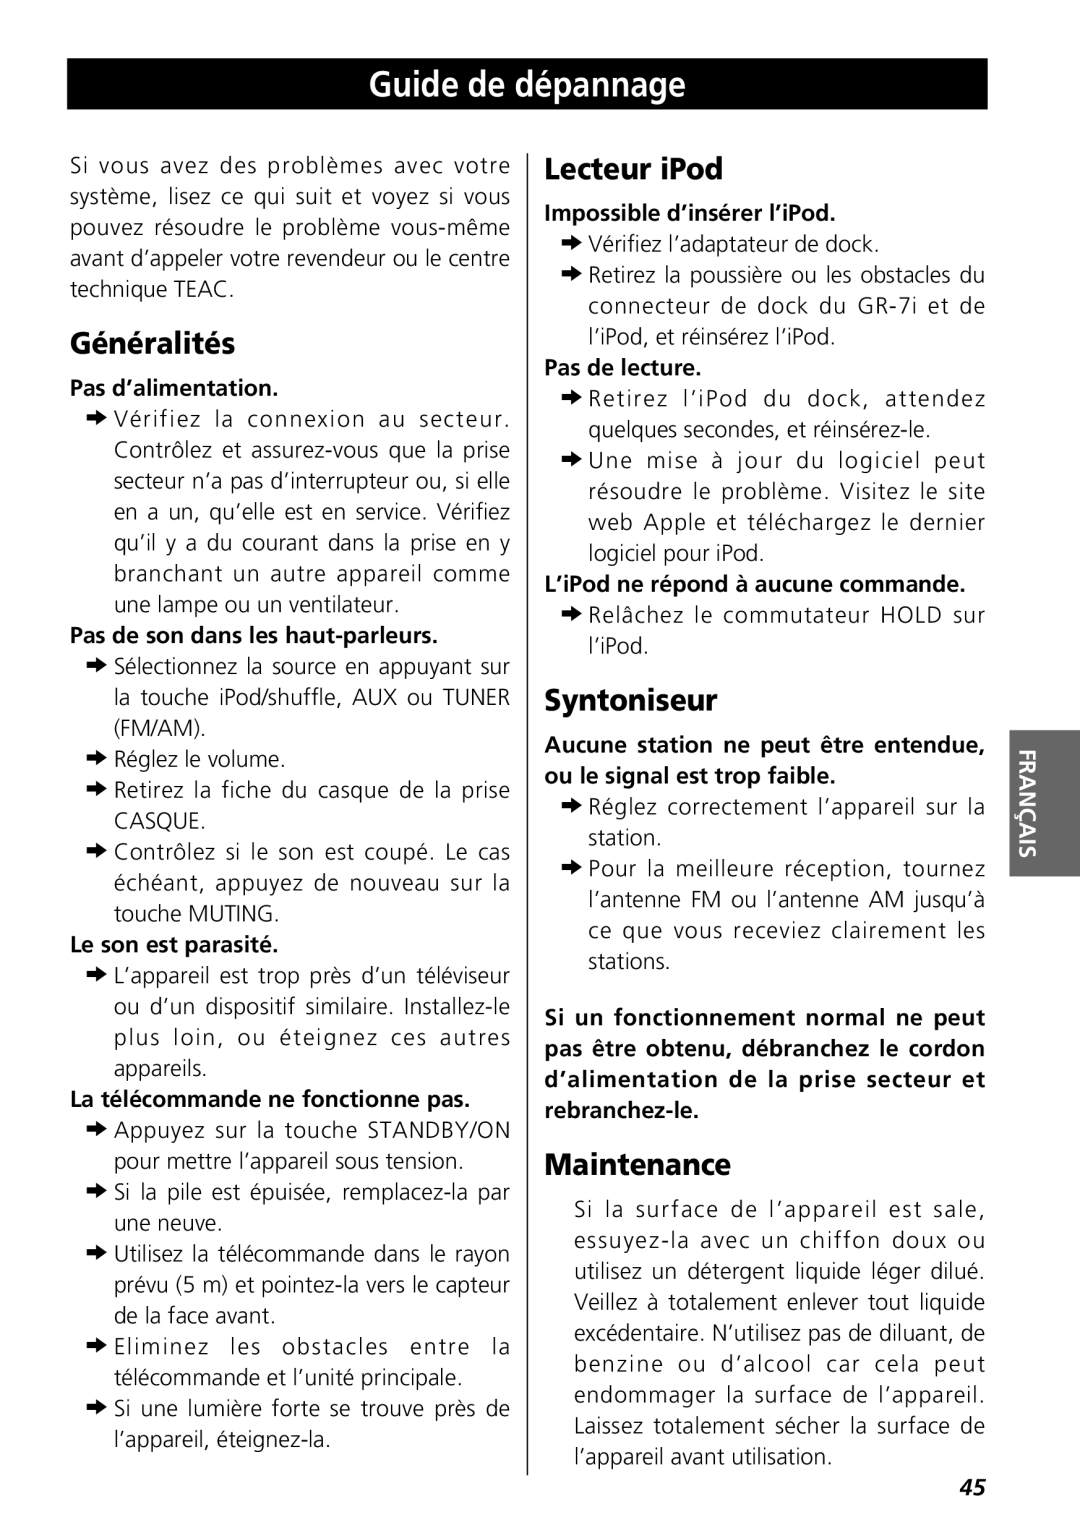 Teac GR-7i owner manual Guide de dépannage, Généralités, Lecteur iPod, Syntoniseur, Maintenance 